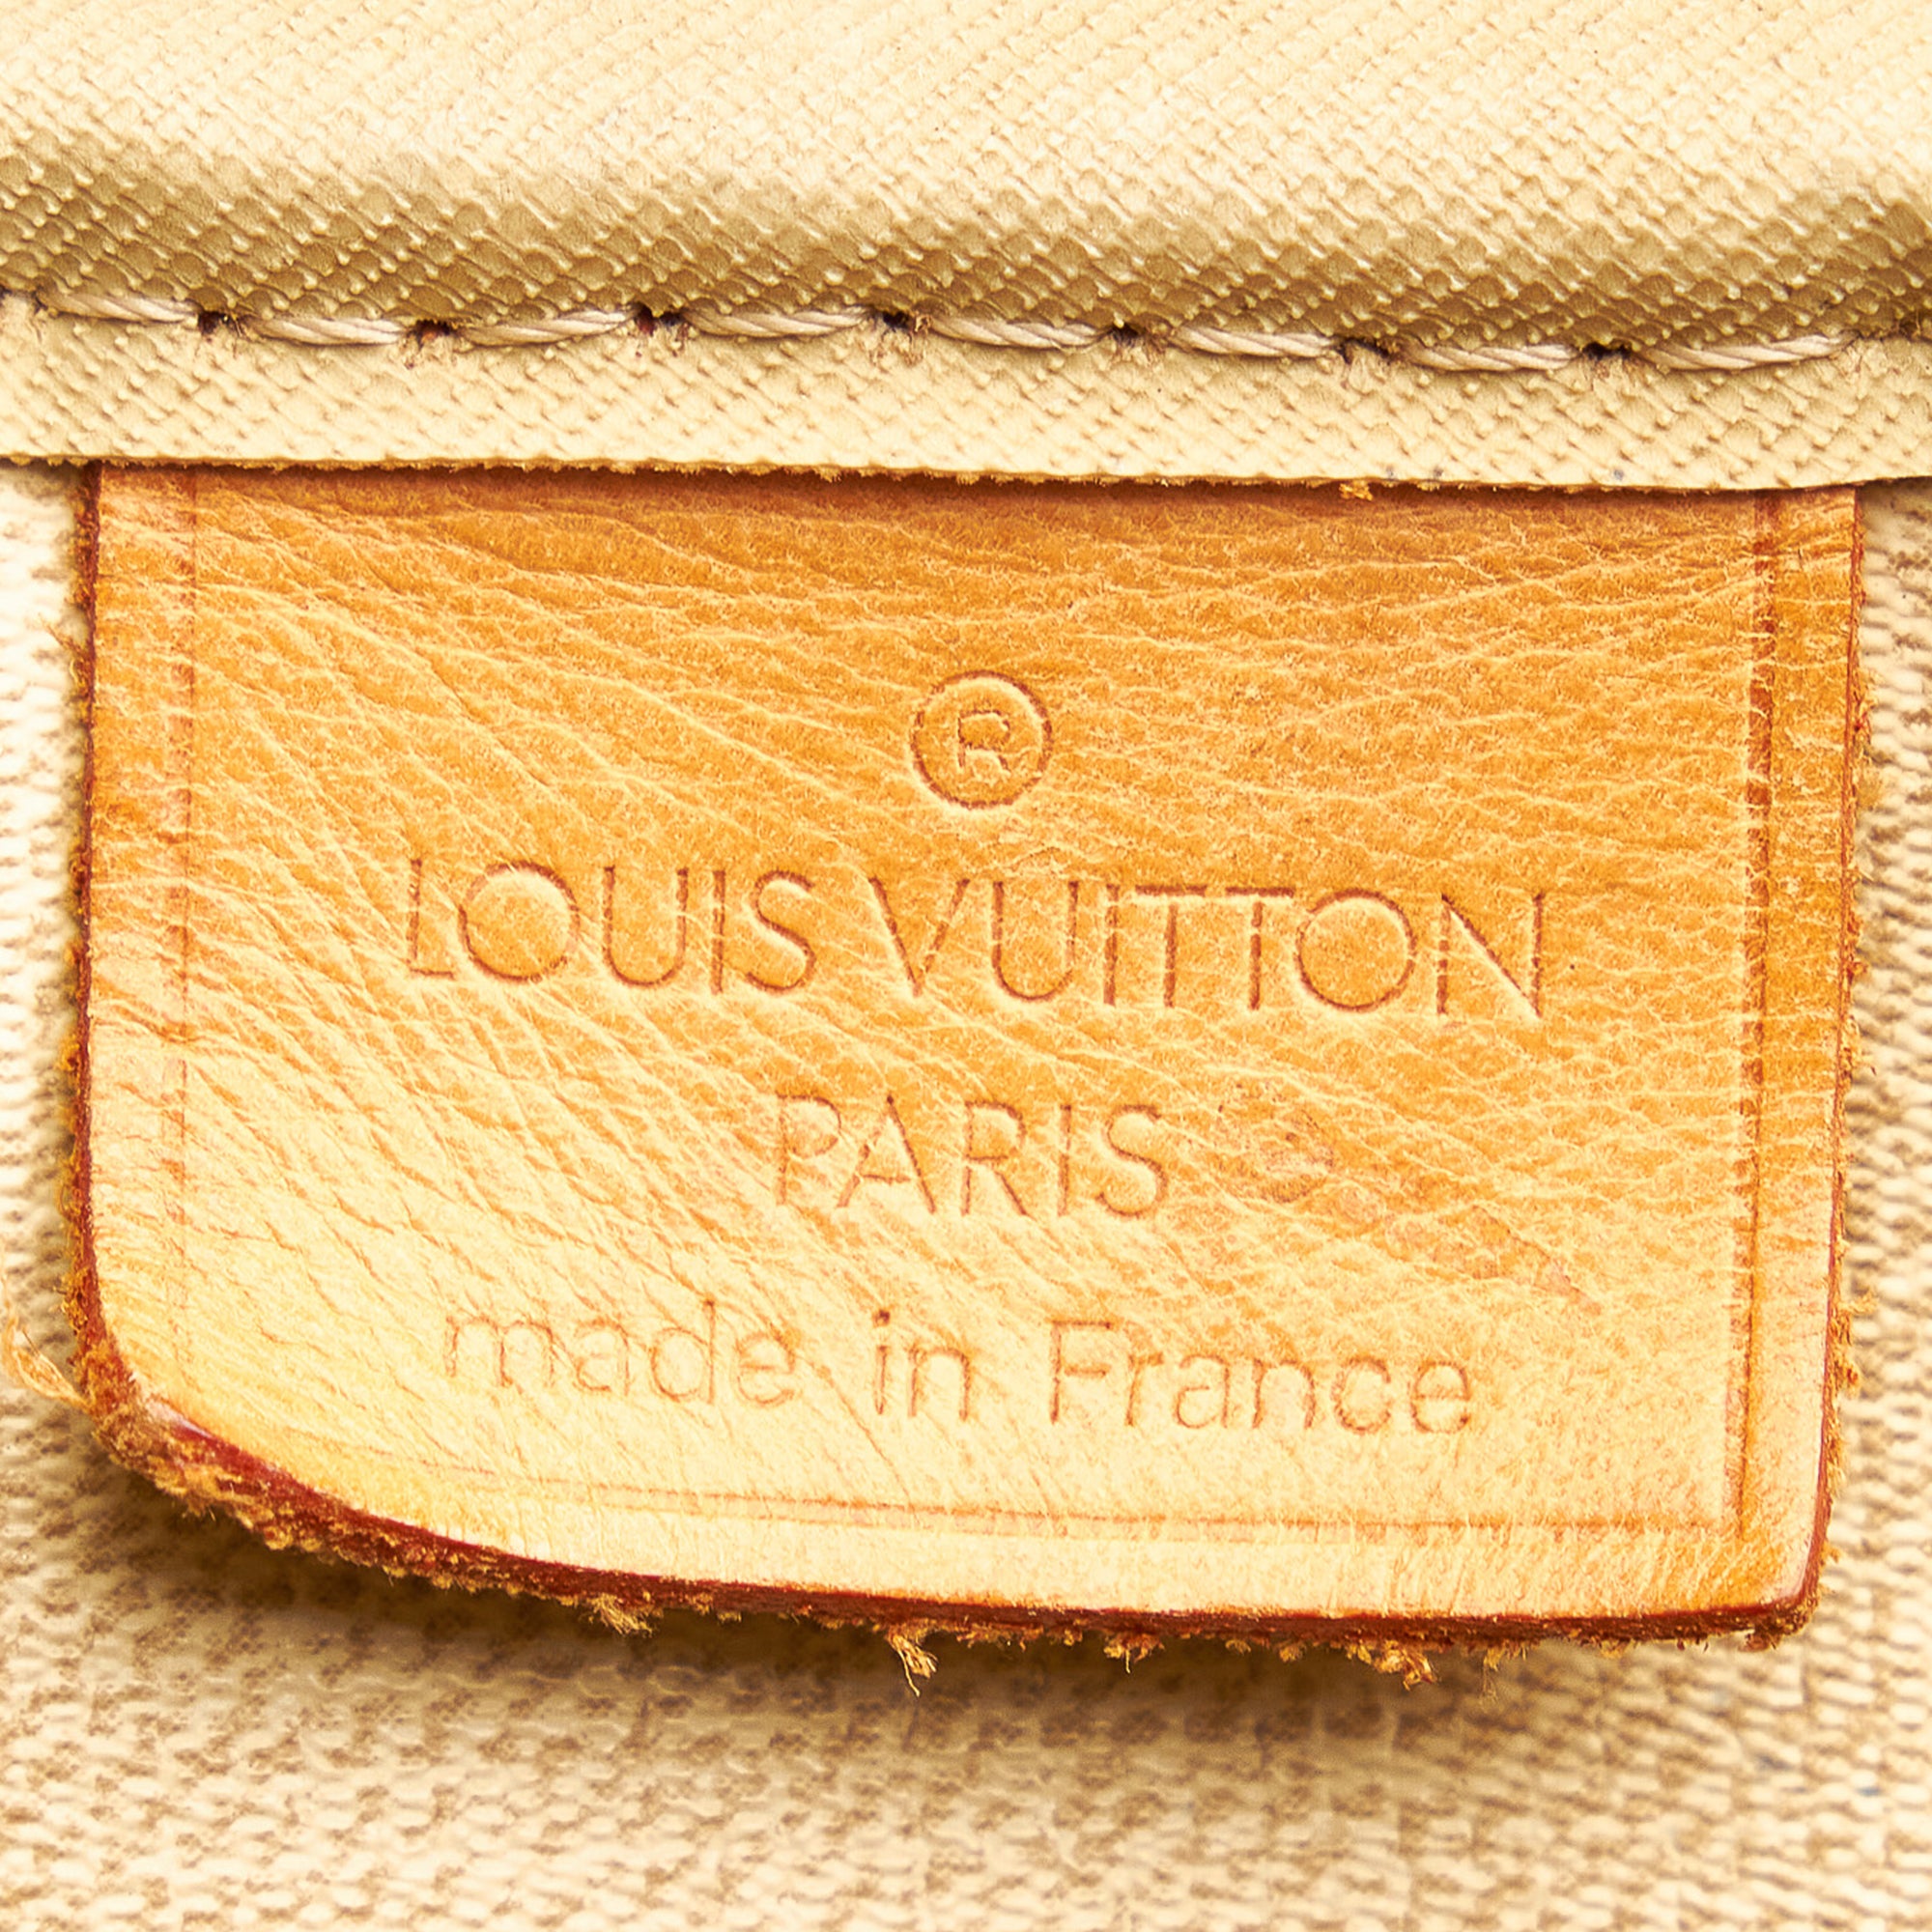 LOUIS VUITTON DEAUVILLE Monogram handbag No.1153-e